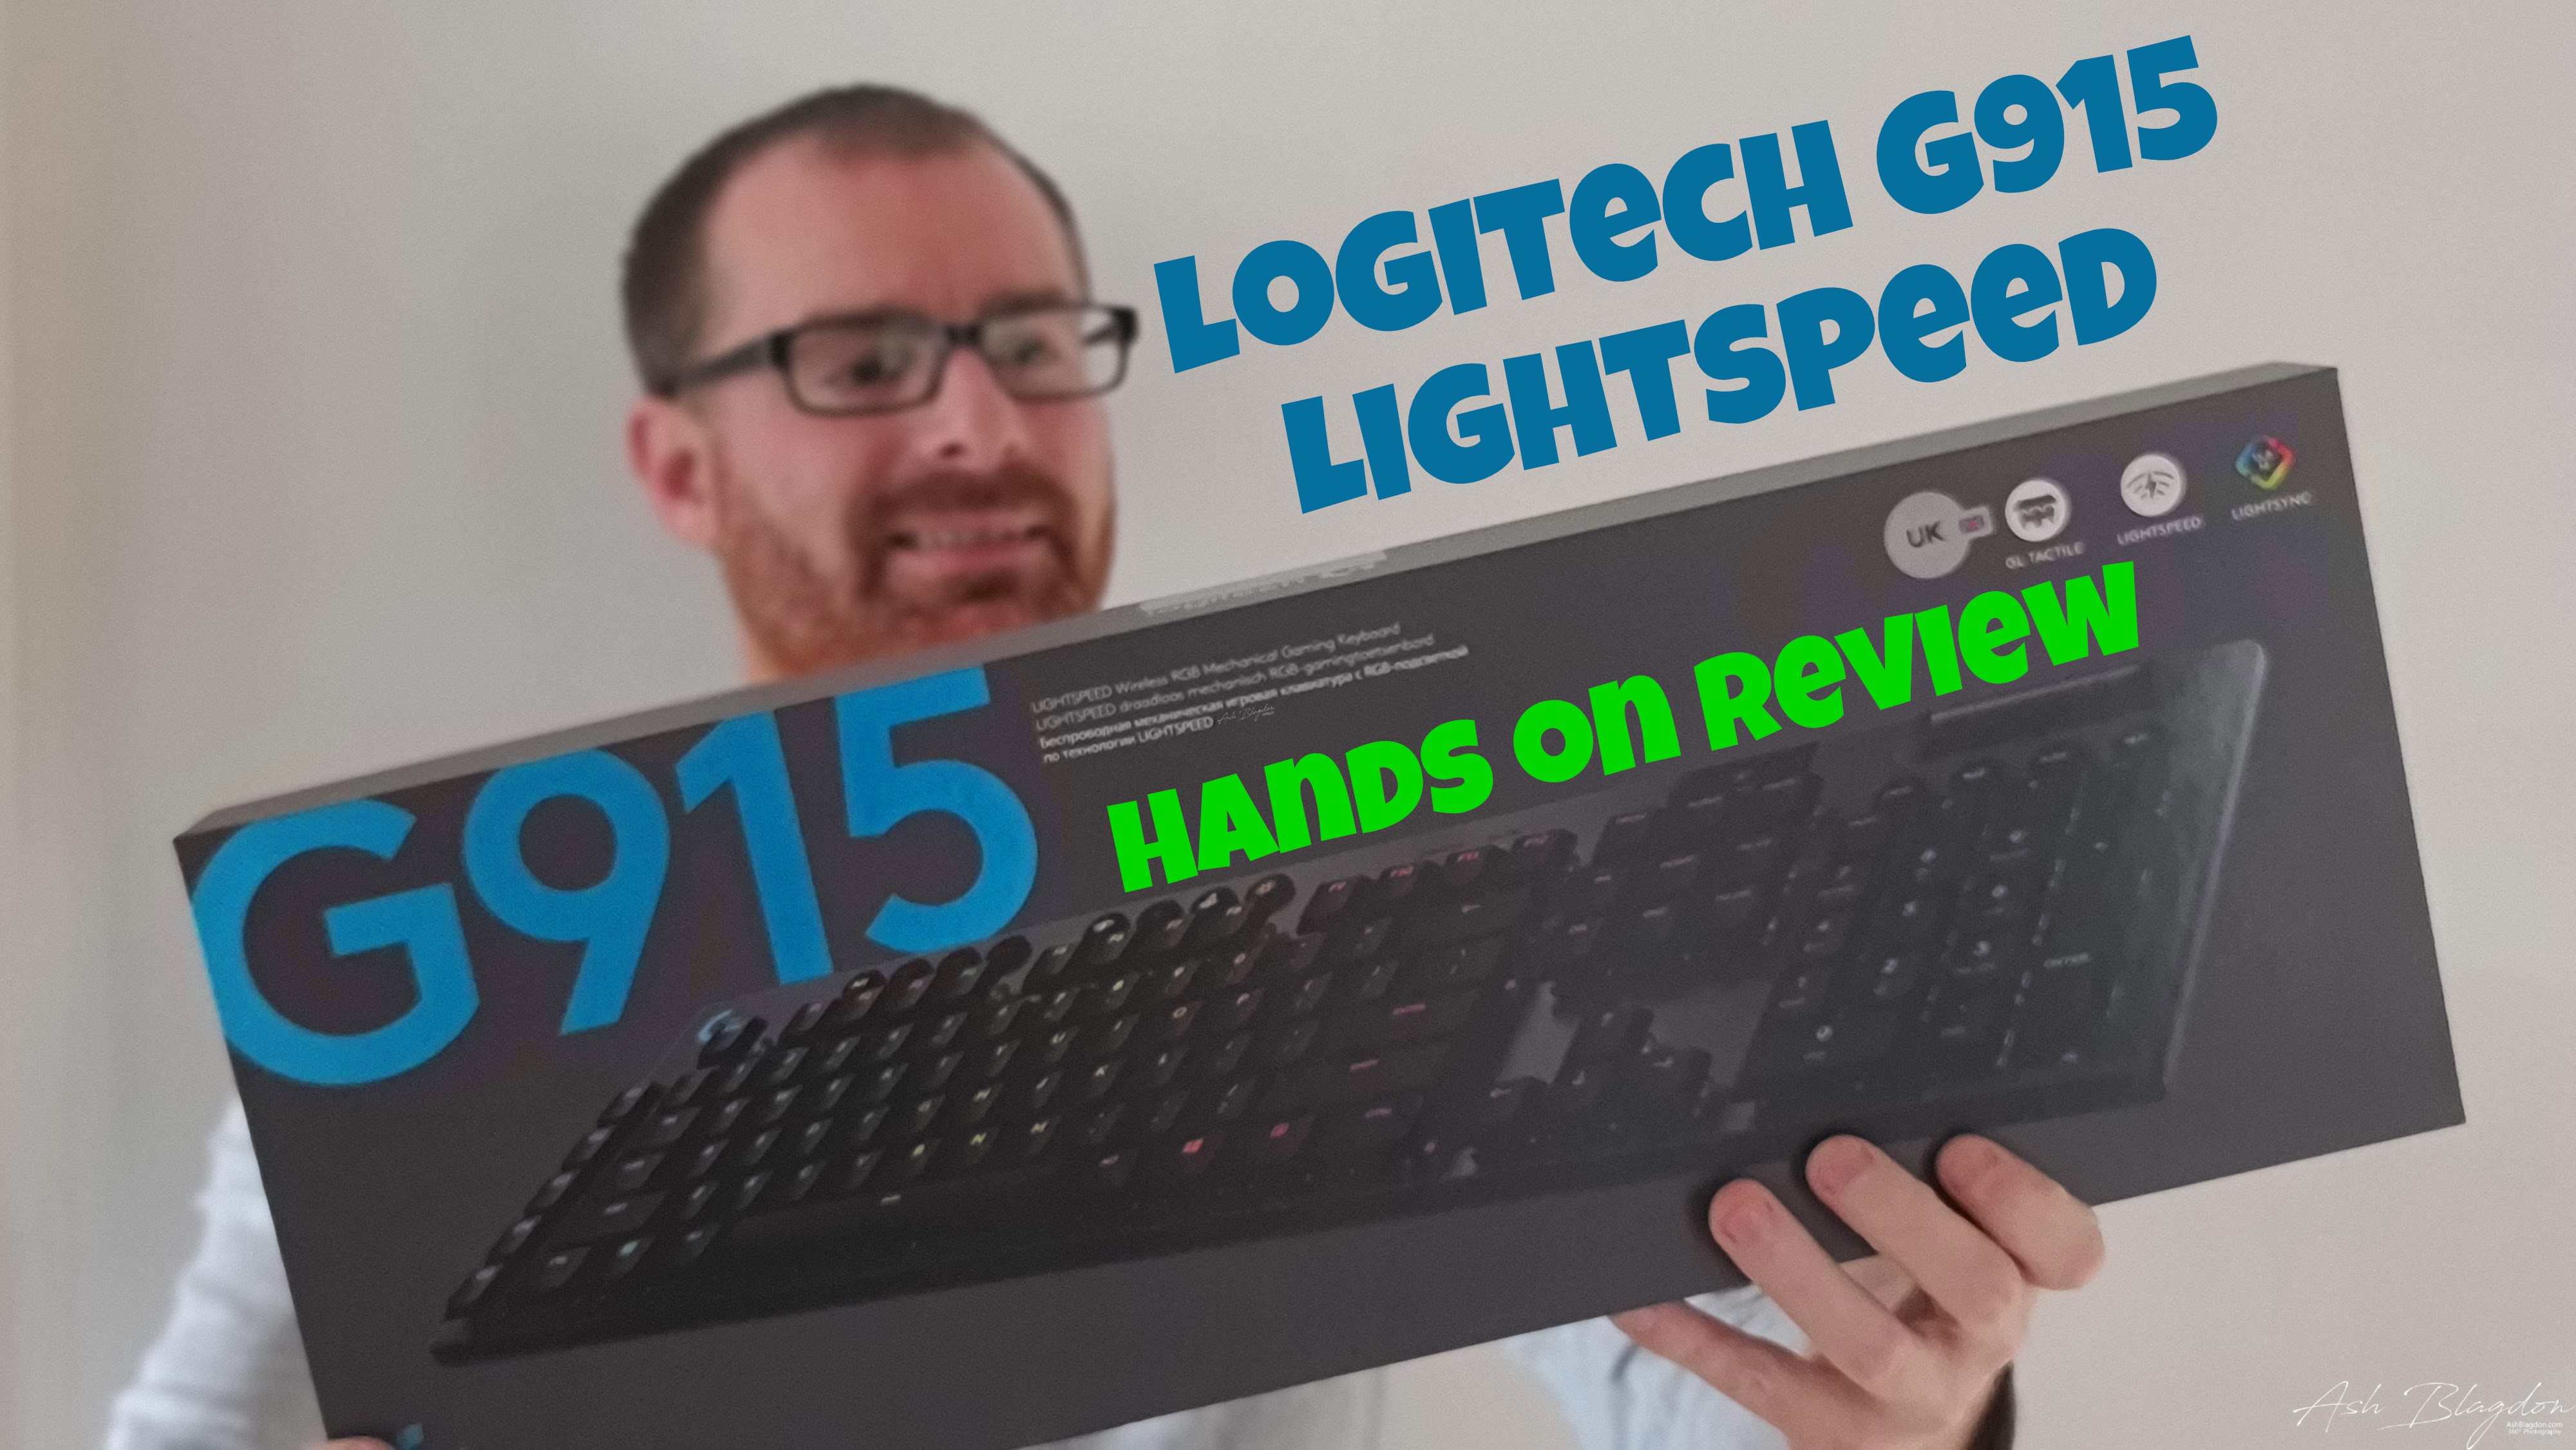 Logitech G502 Lightspeed Hands on Review - Ash Blagdon 360º Photography